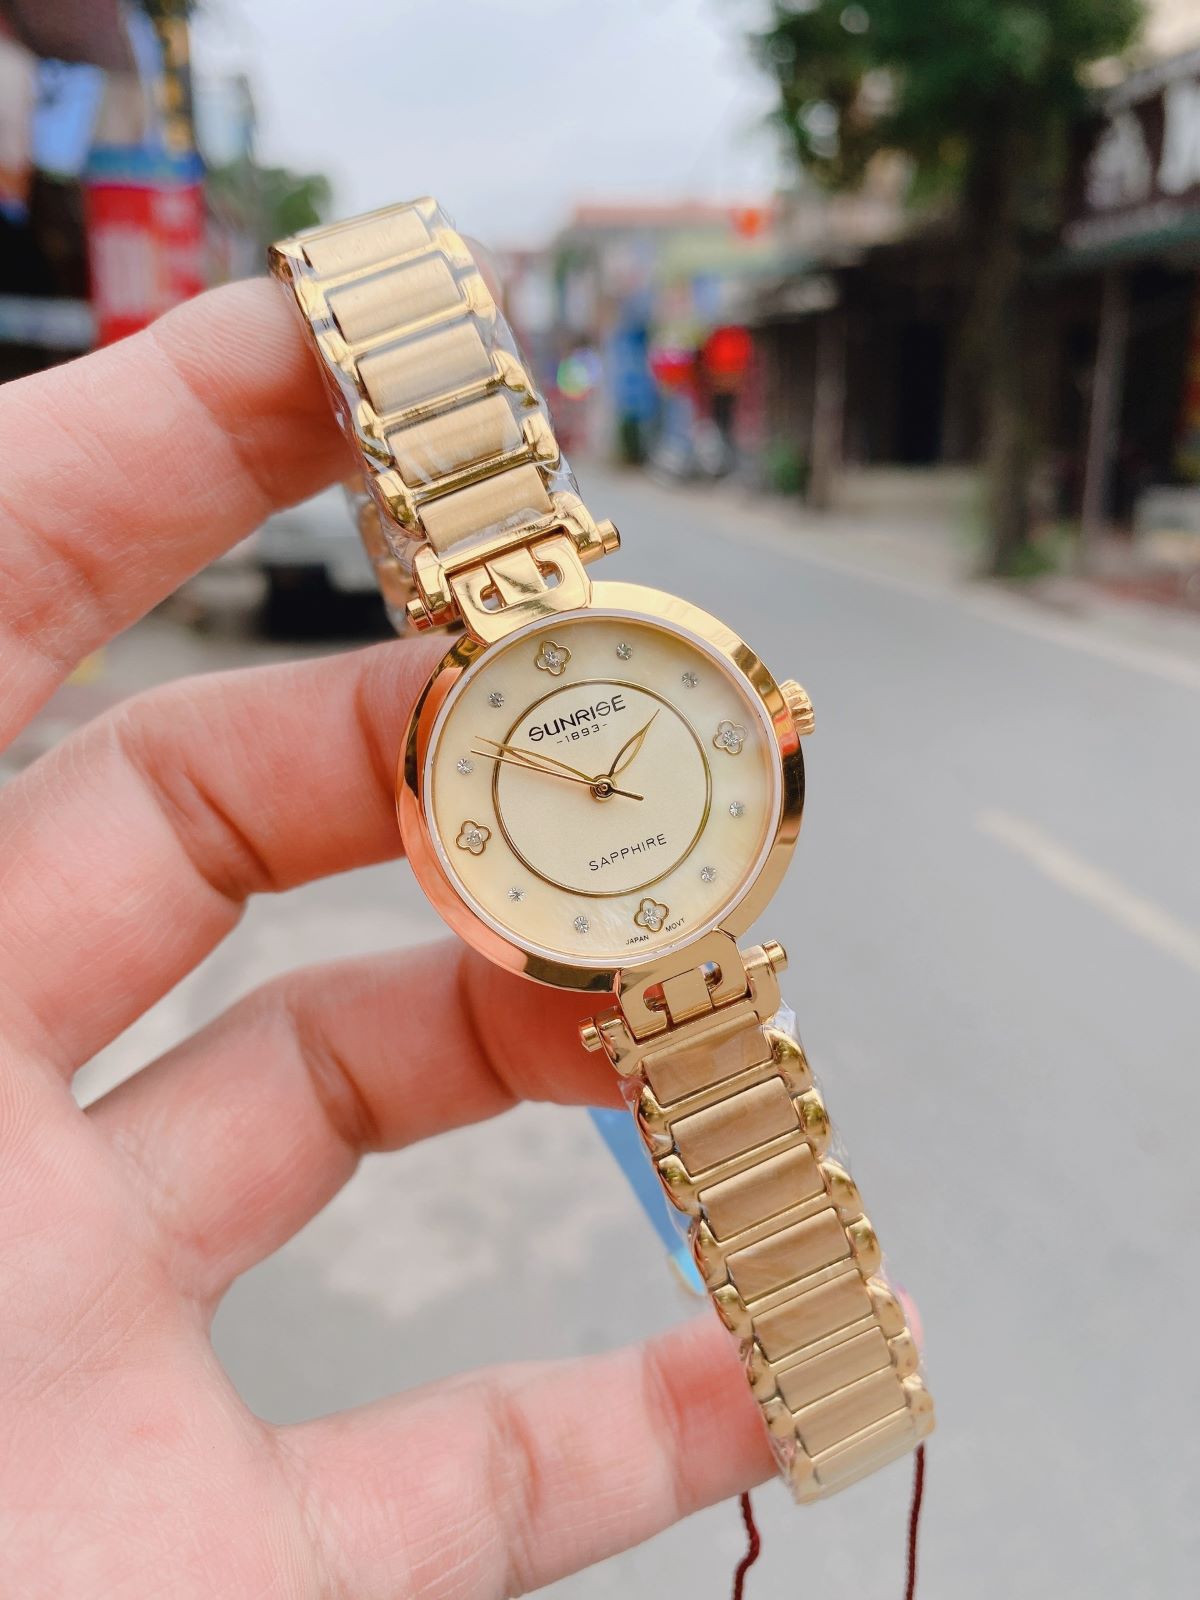 Đồng hồ nữ Sunrise chính hãng, size 30mm, kính sapphire, chống nước, chống xước tuyệt đối ĐỒNG HỒ CAO CẤP